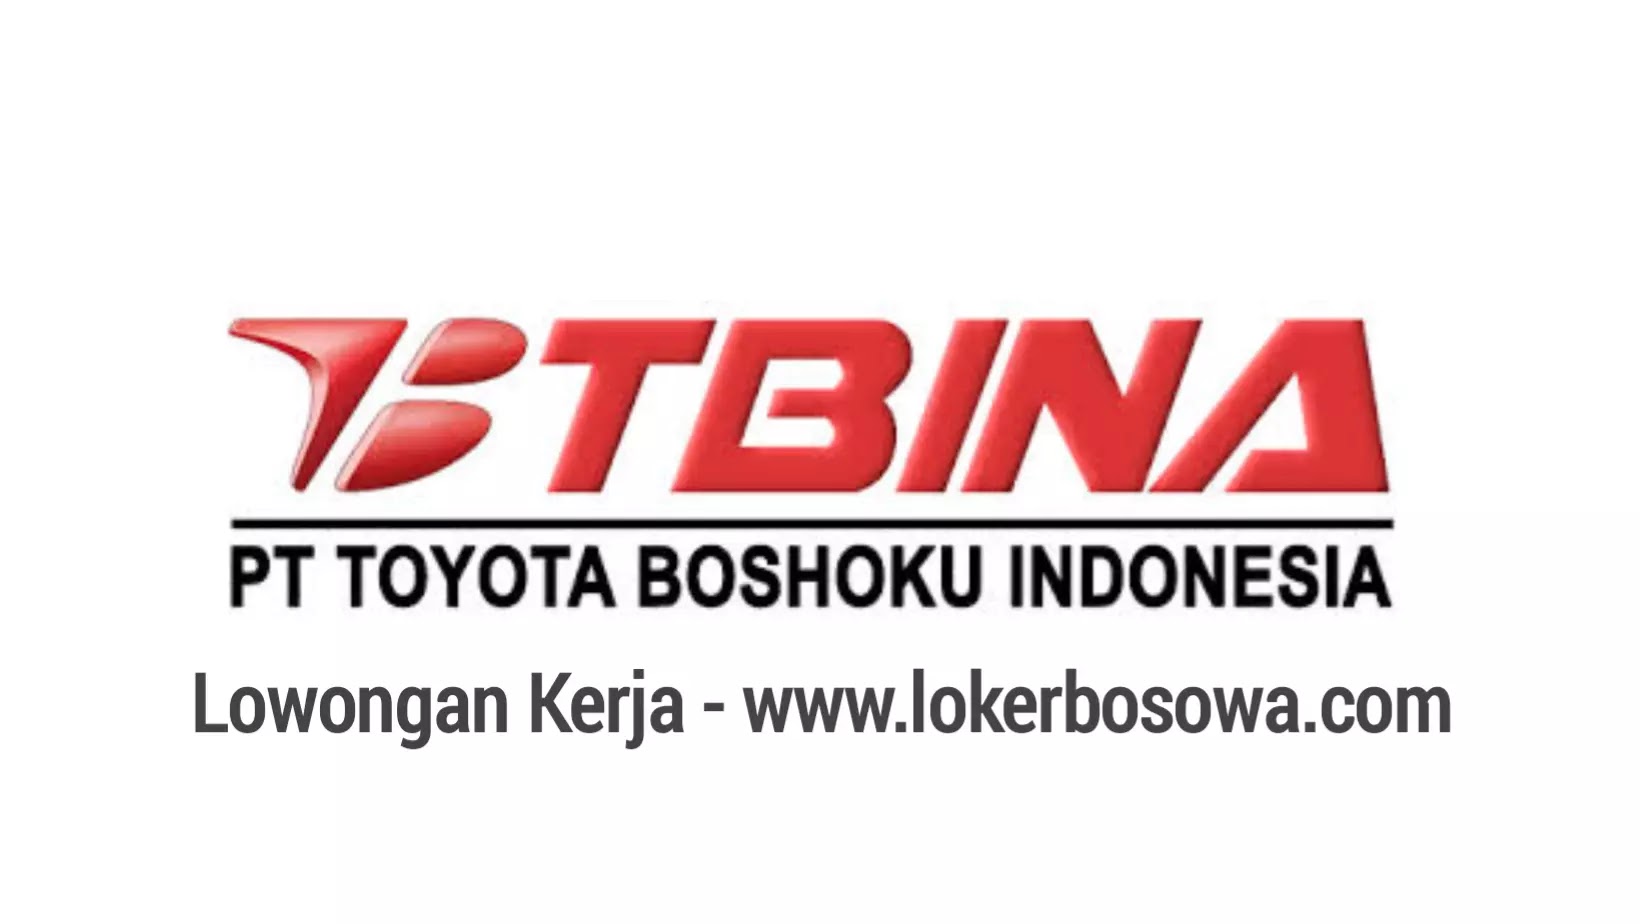 Lowongan Kerja MM2100 PT Toyota Boshoku Indonesia